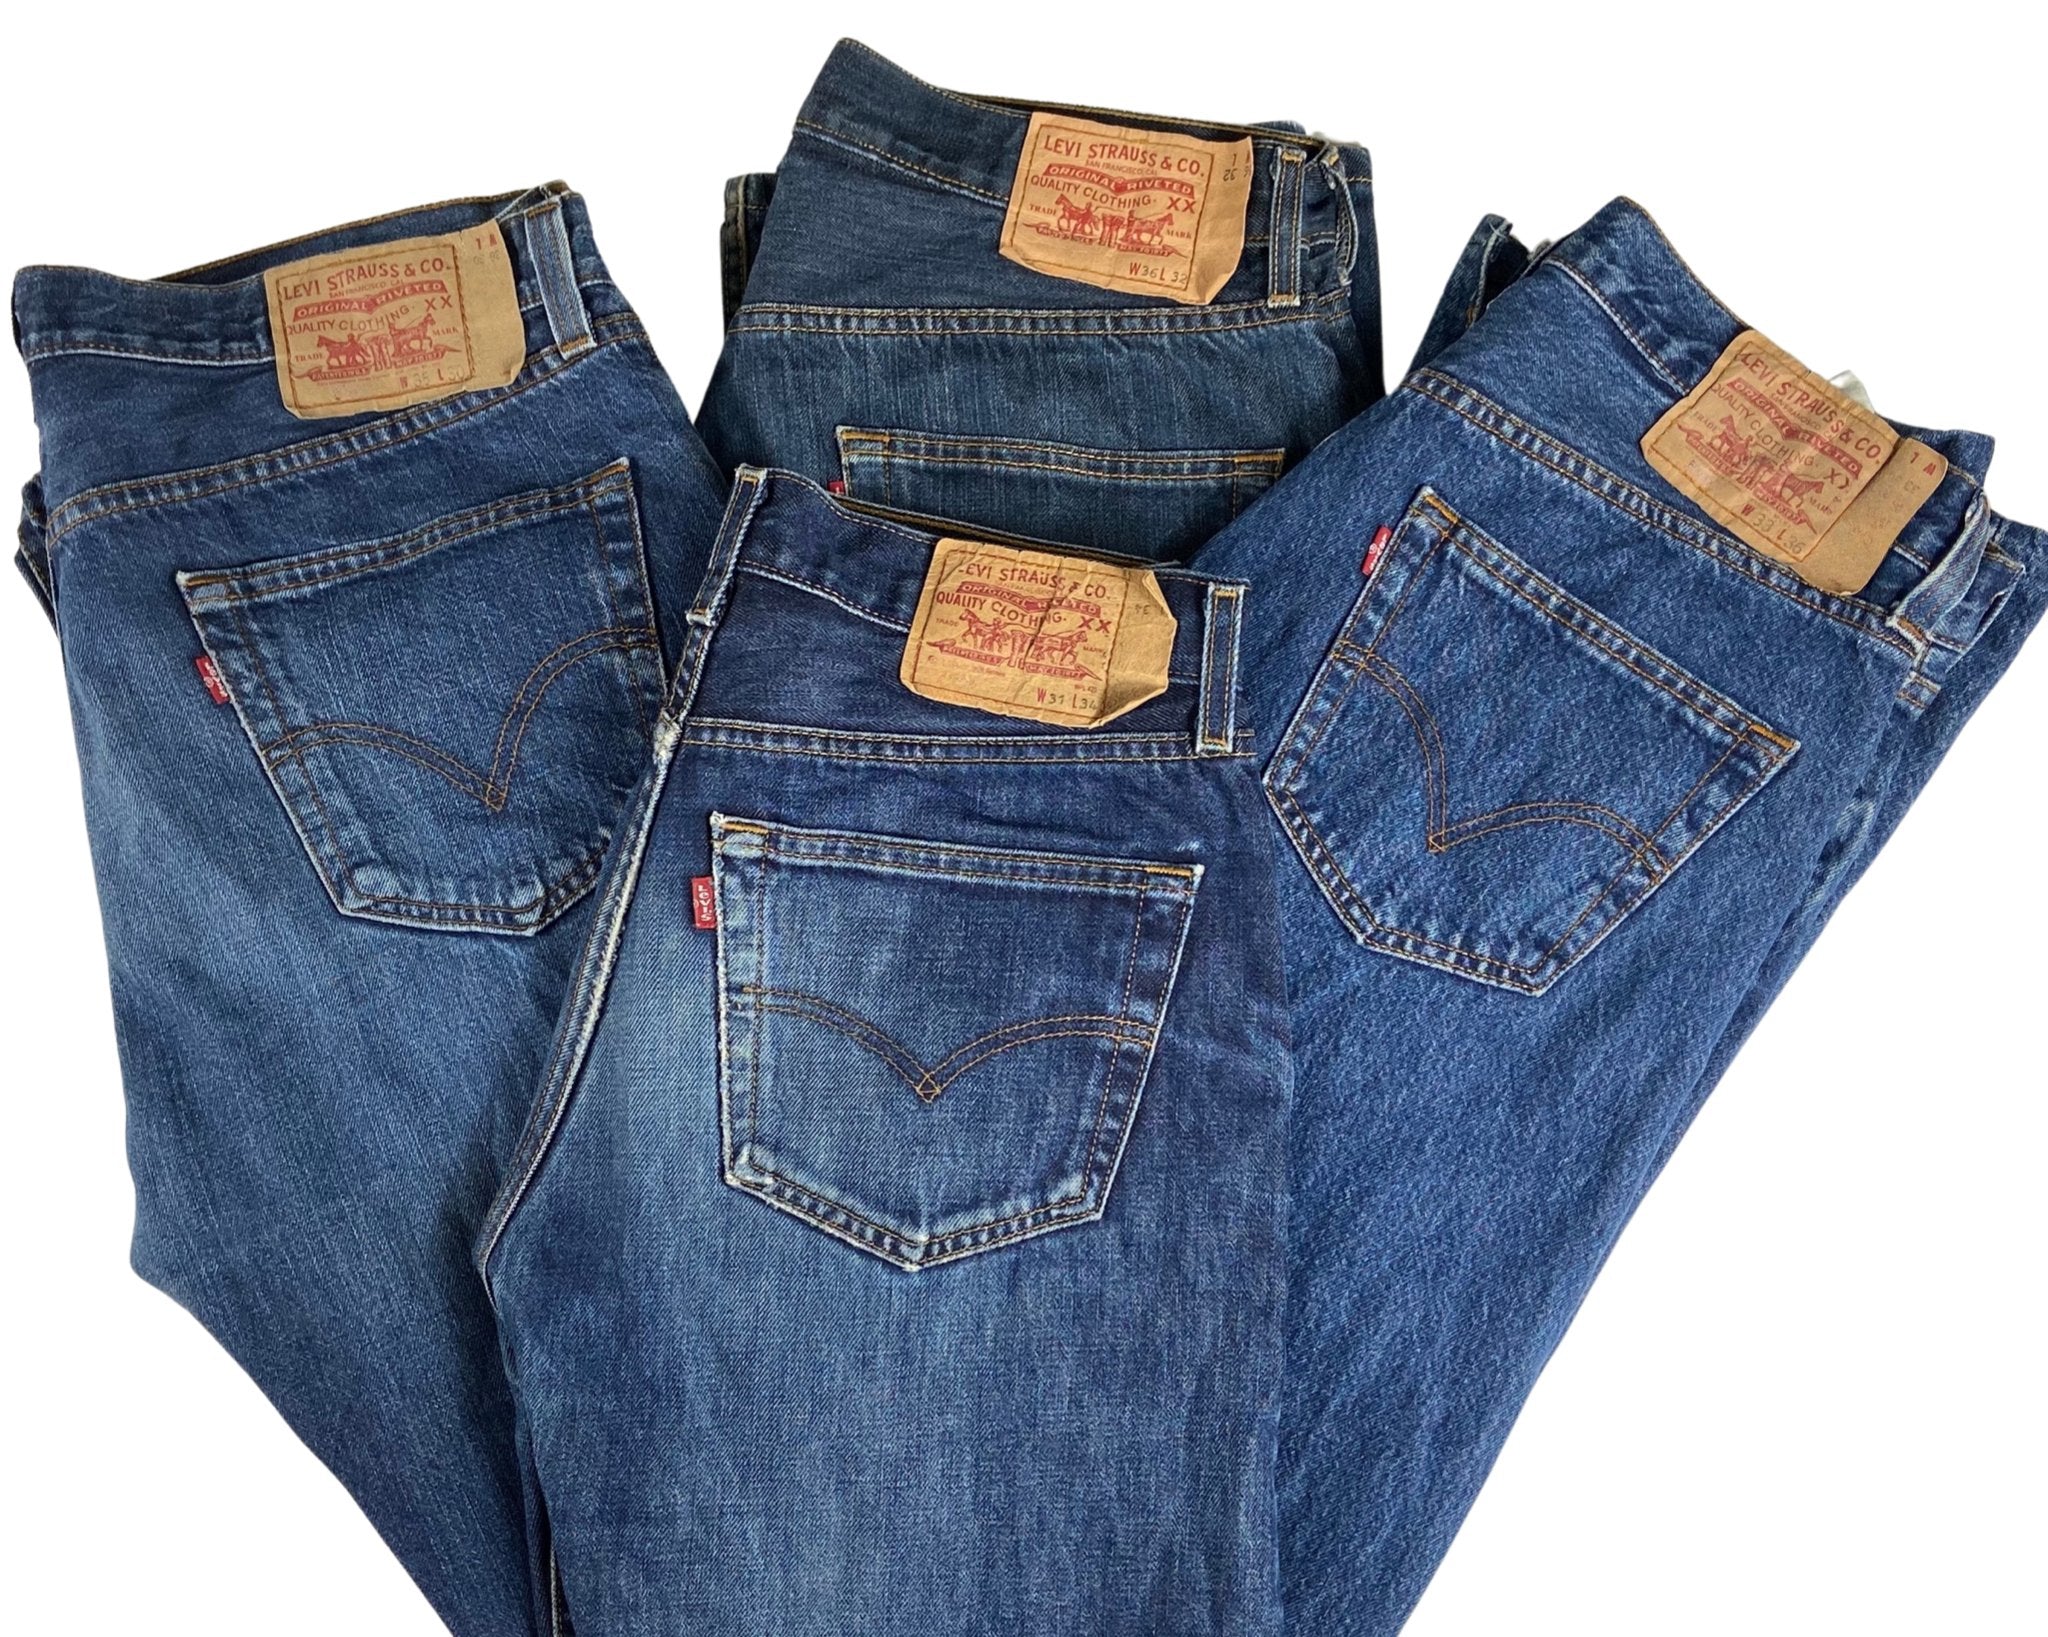 Vintage Levi's Classic Blue Jeans - Waist 31 - Length 30 - Vintage Superstore Online